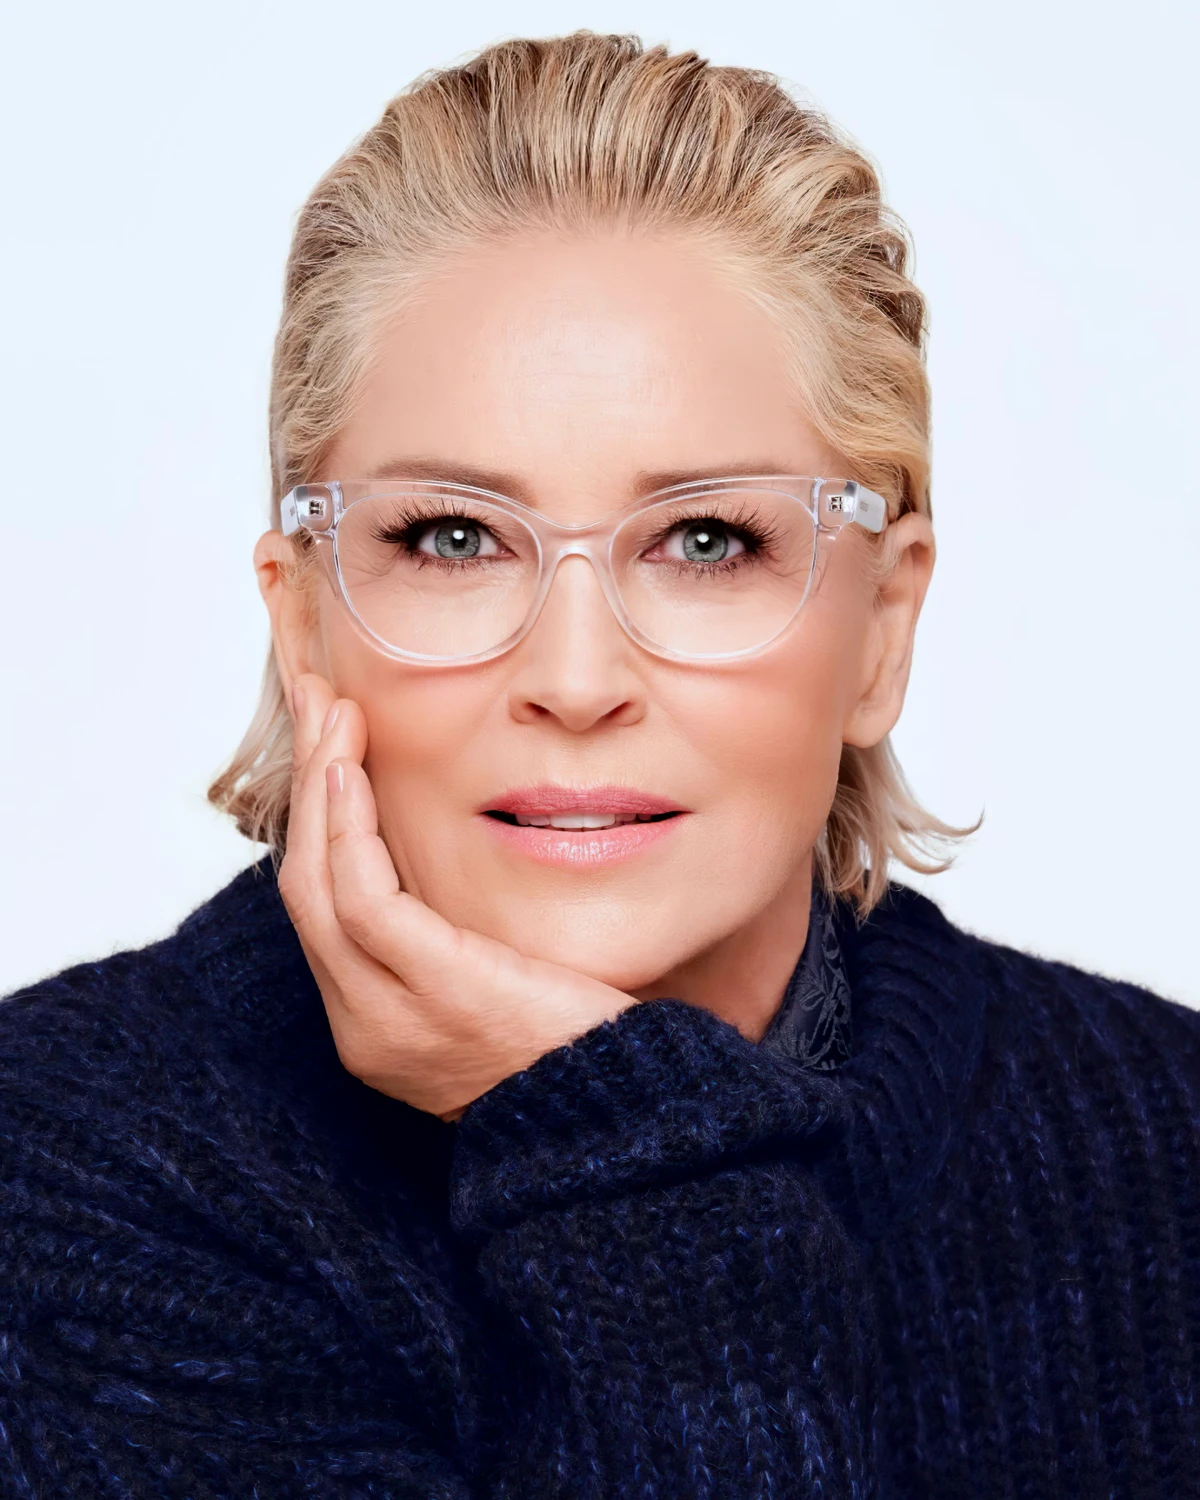 modele de lunettes rajeunissant poir femme de 50 ans